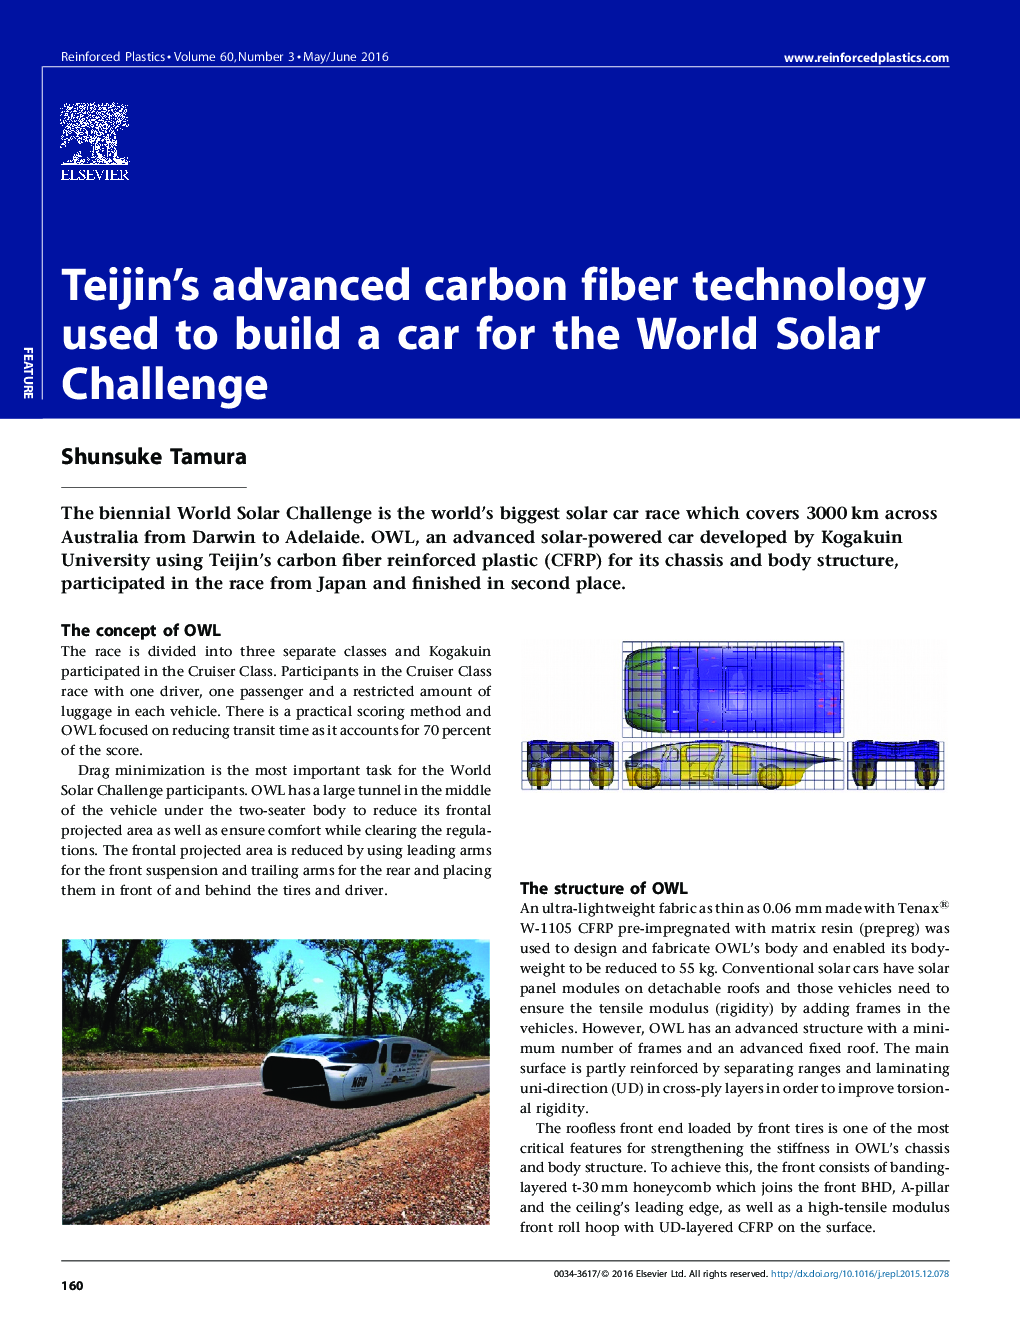 فن آوری پیشرفته فیبر کربن Teijin مورد استفاده برای ساخت یک ماشین برای چالش جهانی خورشیدی